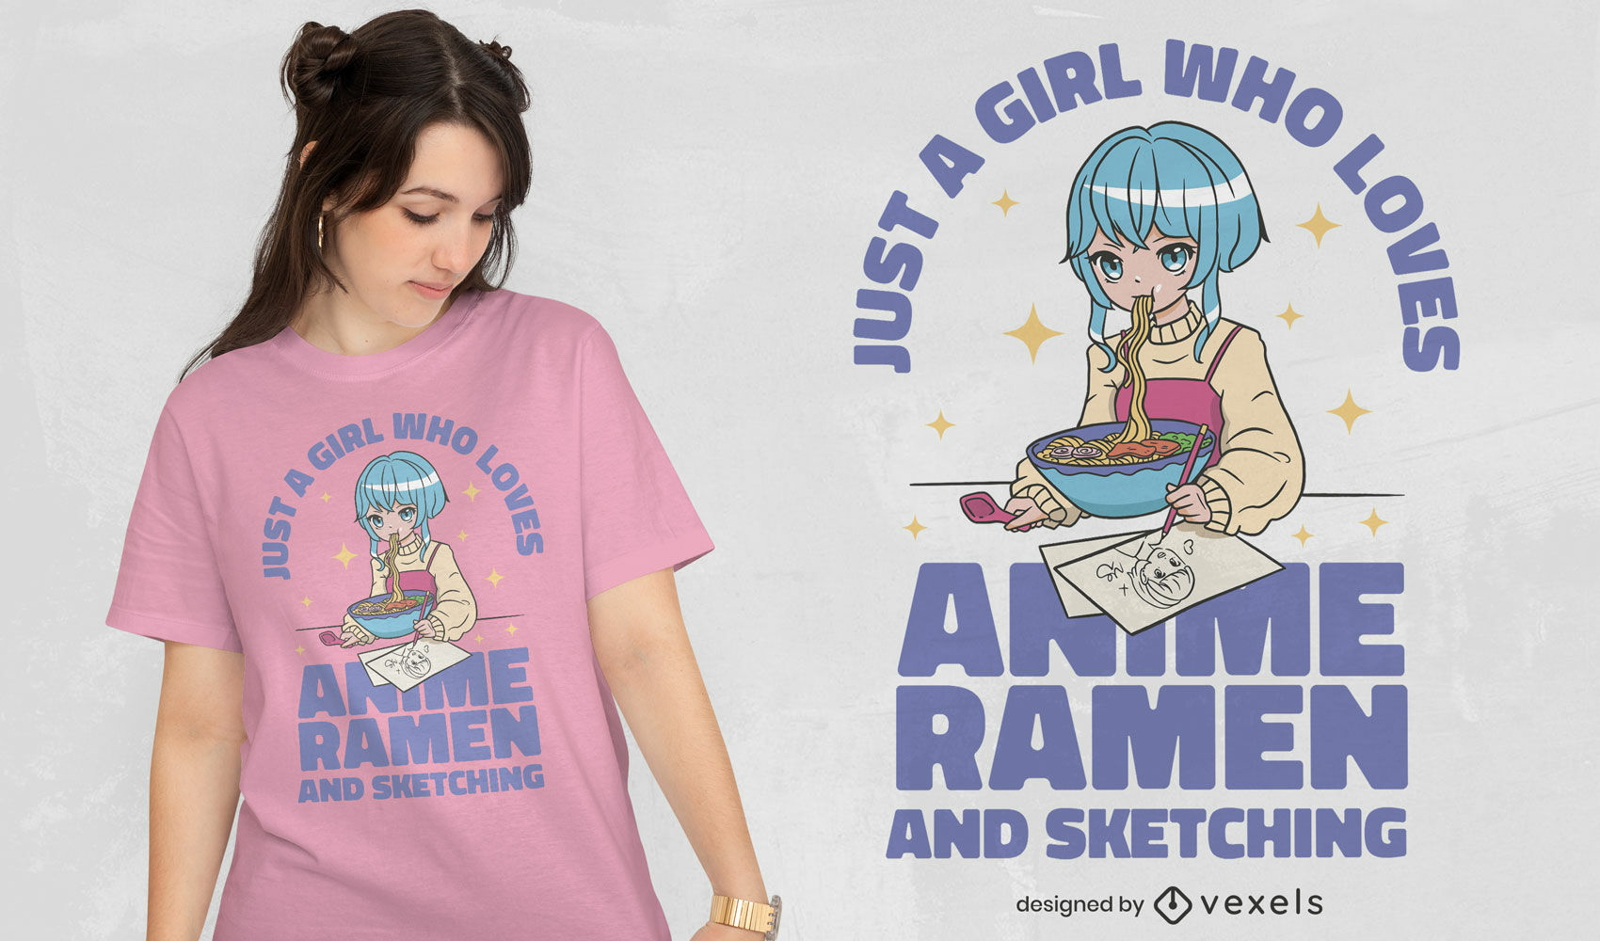 Garota que ama design de camiseta com citação de anime